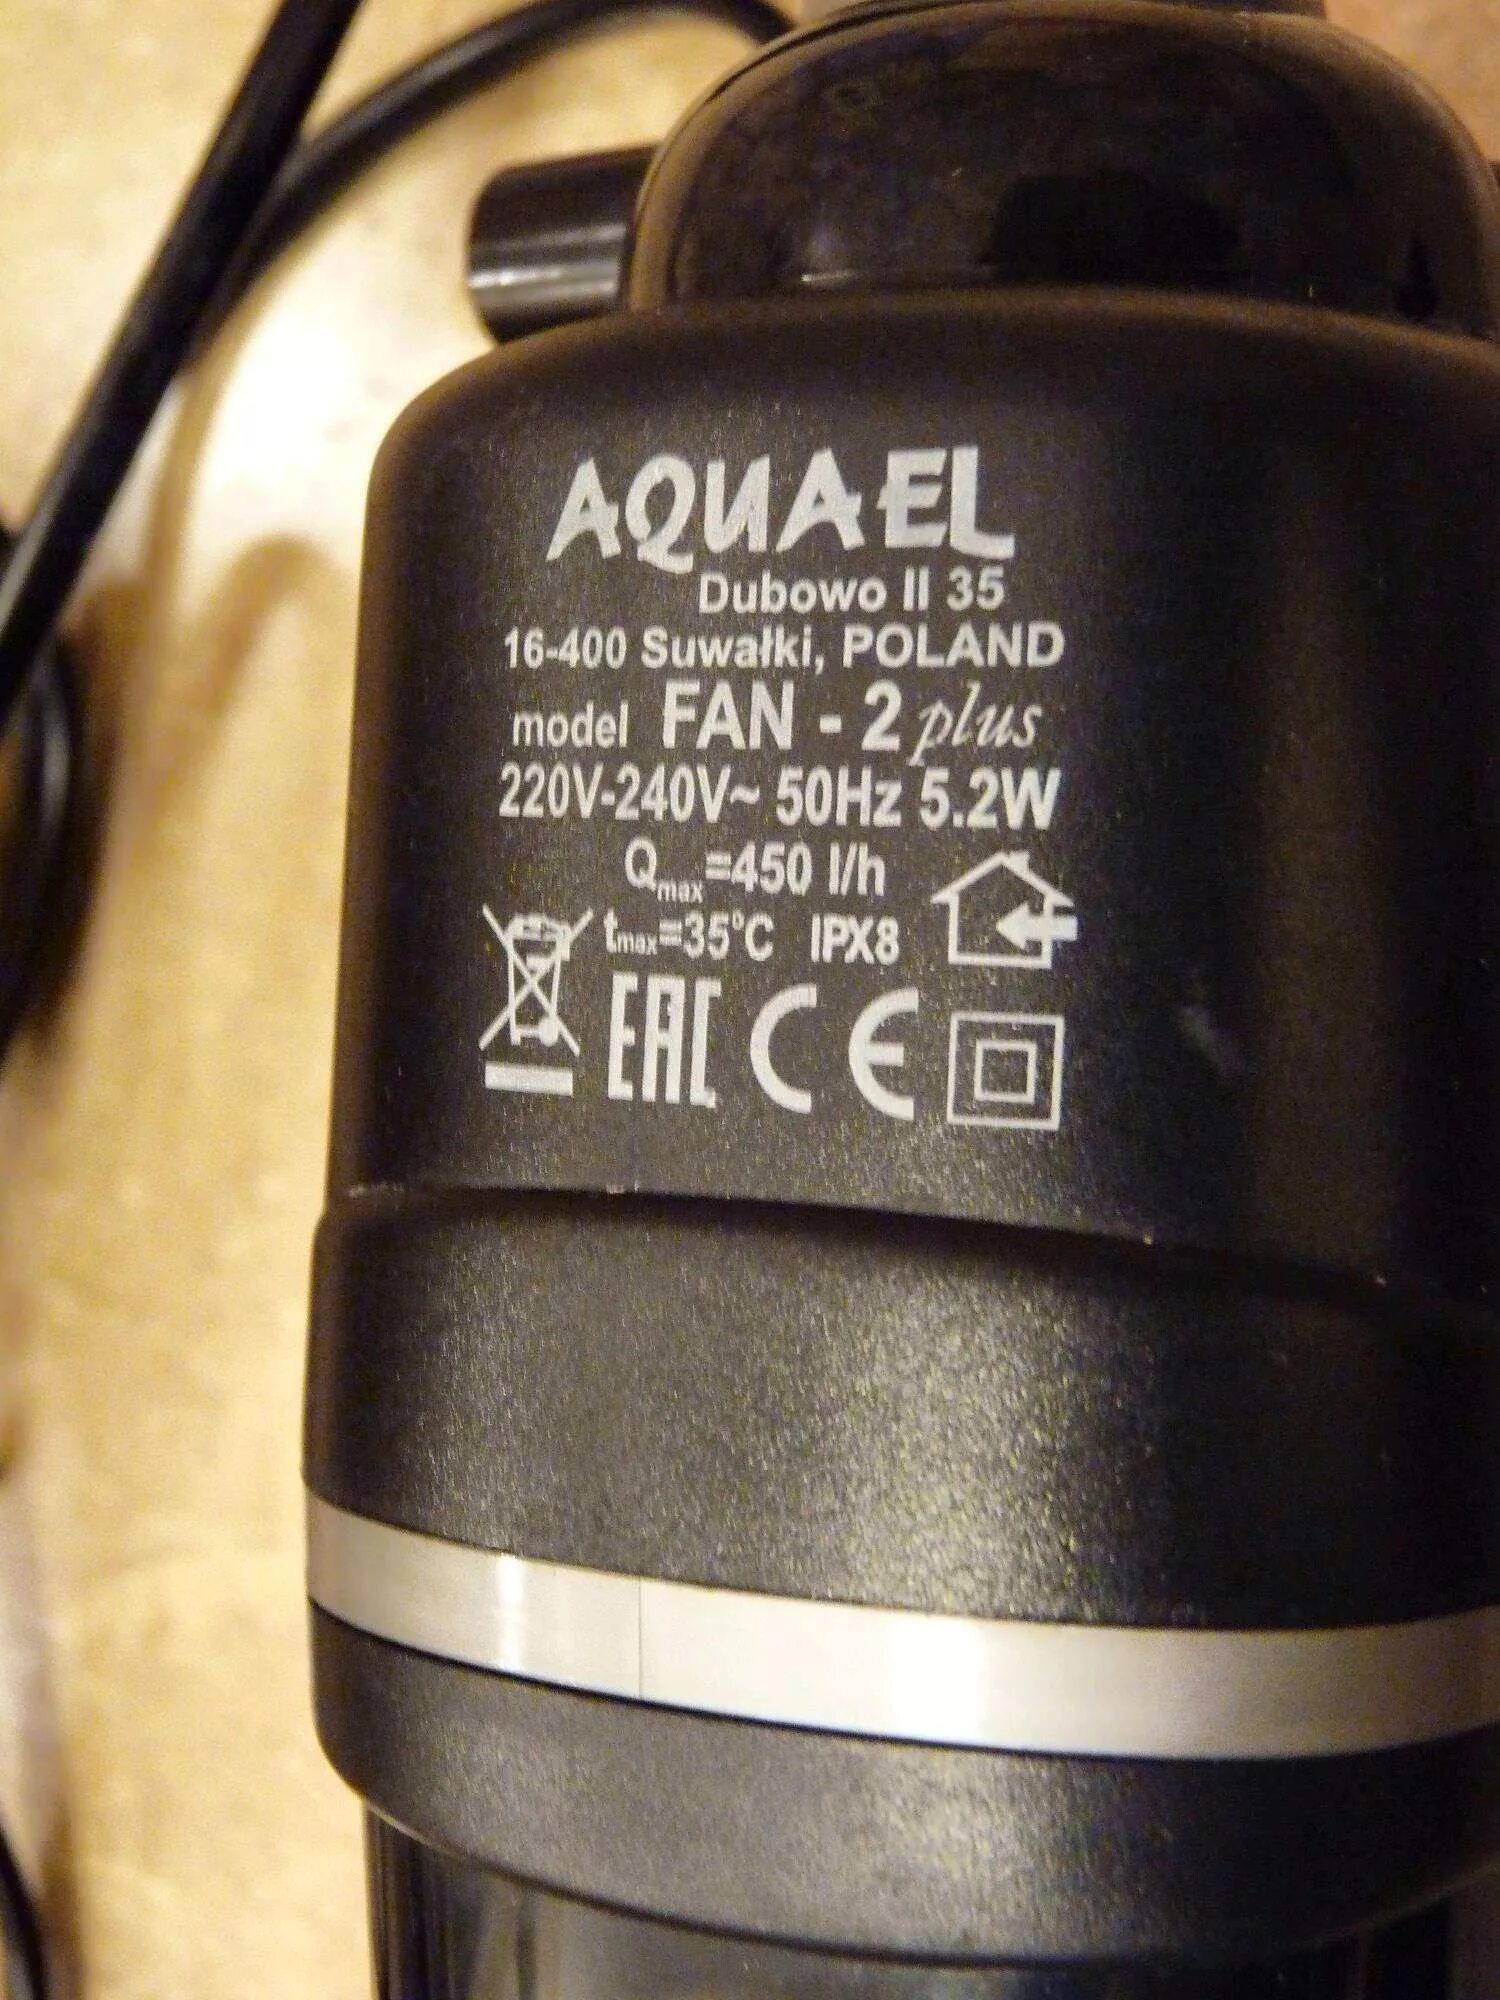 Aquael fan 2. Внутренний фильтр Aquael Fan Filter 2 Plus для аквариума 100 - 150 л (450 л/ч, 5.2 Вт). Фильтр Aquael Dubowo II 35. Aquael Dubowo II 35 16-400 Suwalki. Внутренний фильтр Aquael Fan-2 Plus, 450 л/ч (100-150л).